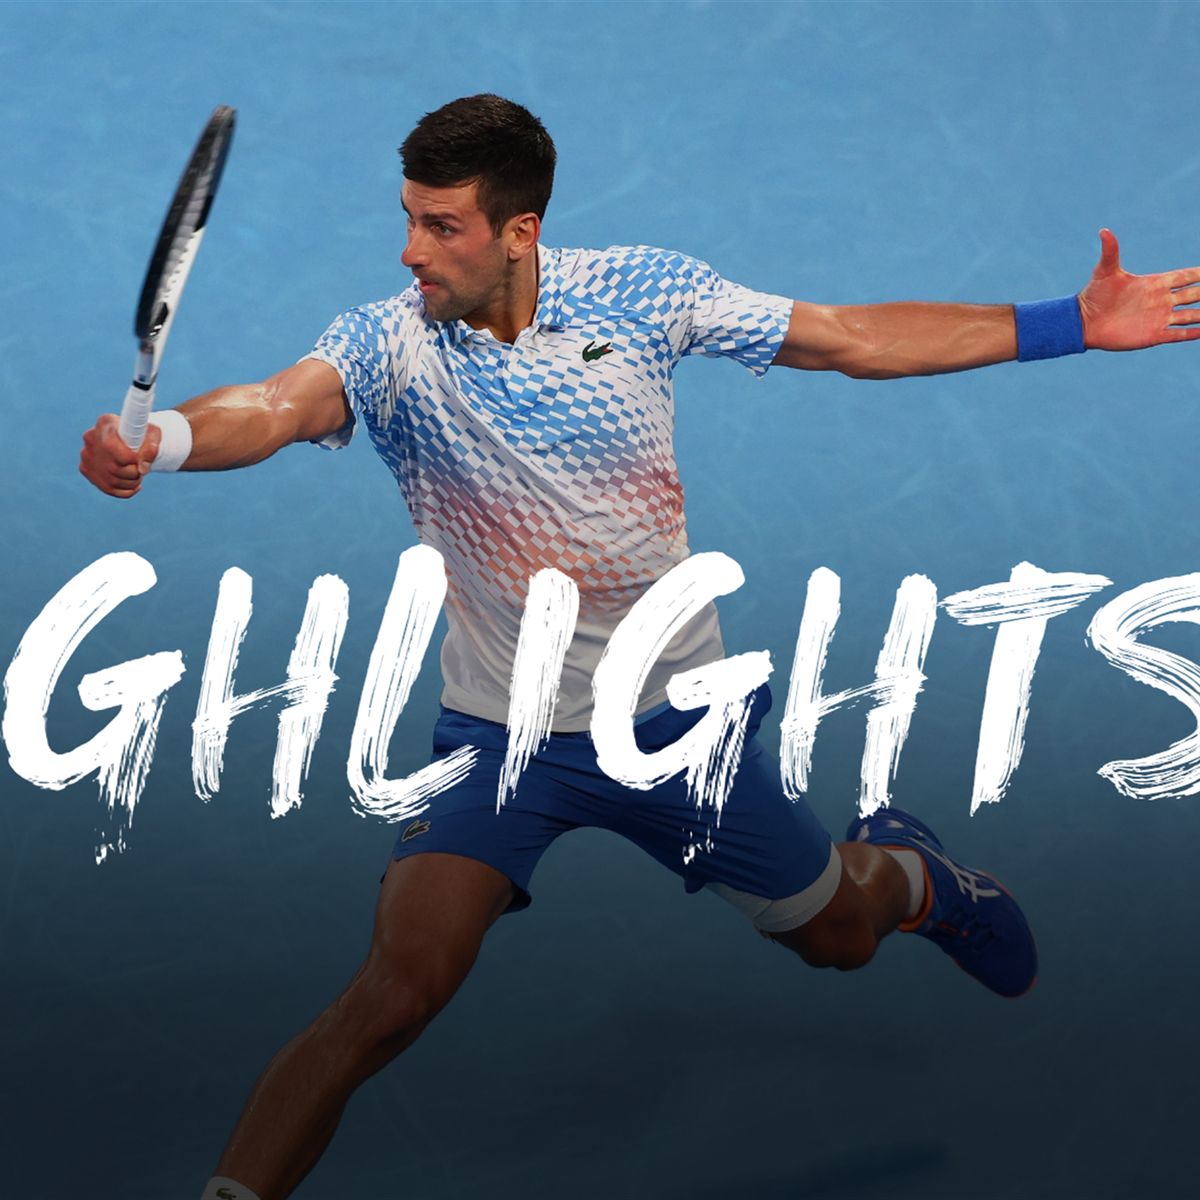 Australian Open 2023 Novak Djokovic - Tommy Paul Highlights - Halbfinale Herren-Einzel - Tennis Video